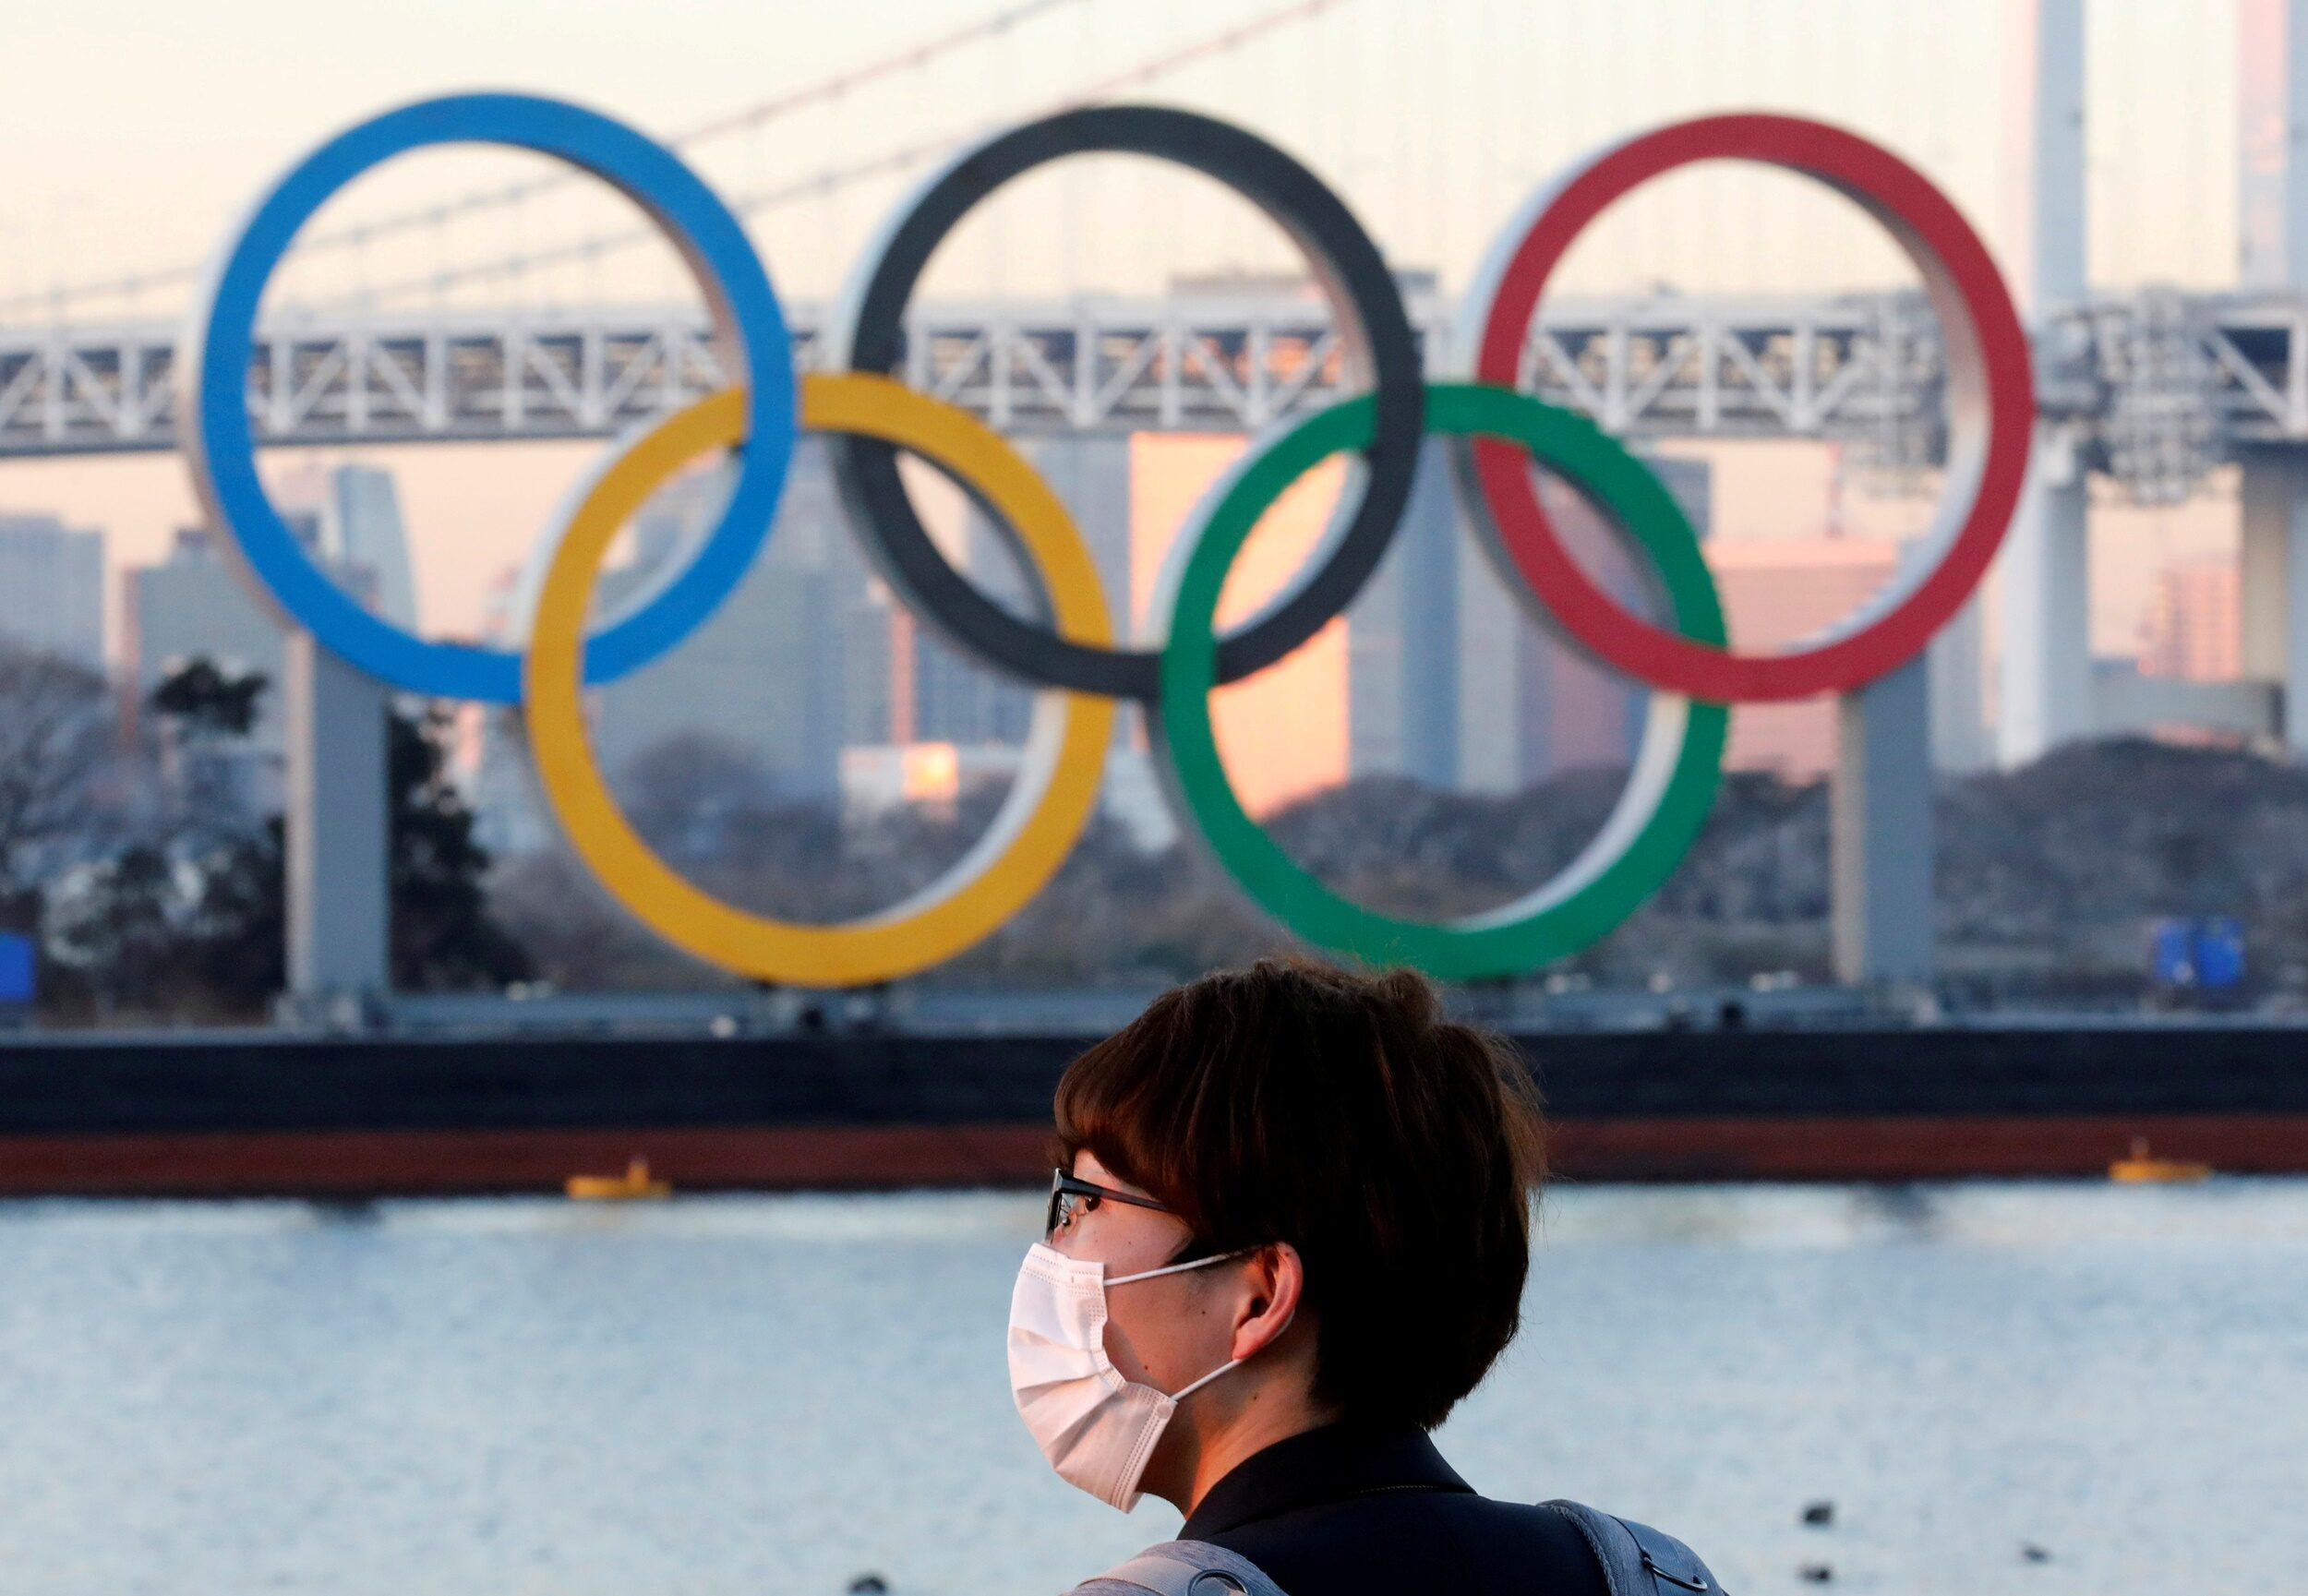 ฟลอริดาร่อนจดหมายถึงไอโอซี เสนอตัวจัดโอลิมปิกแทนถ้าโตเกียวไม่พร้อม